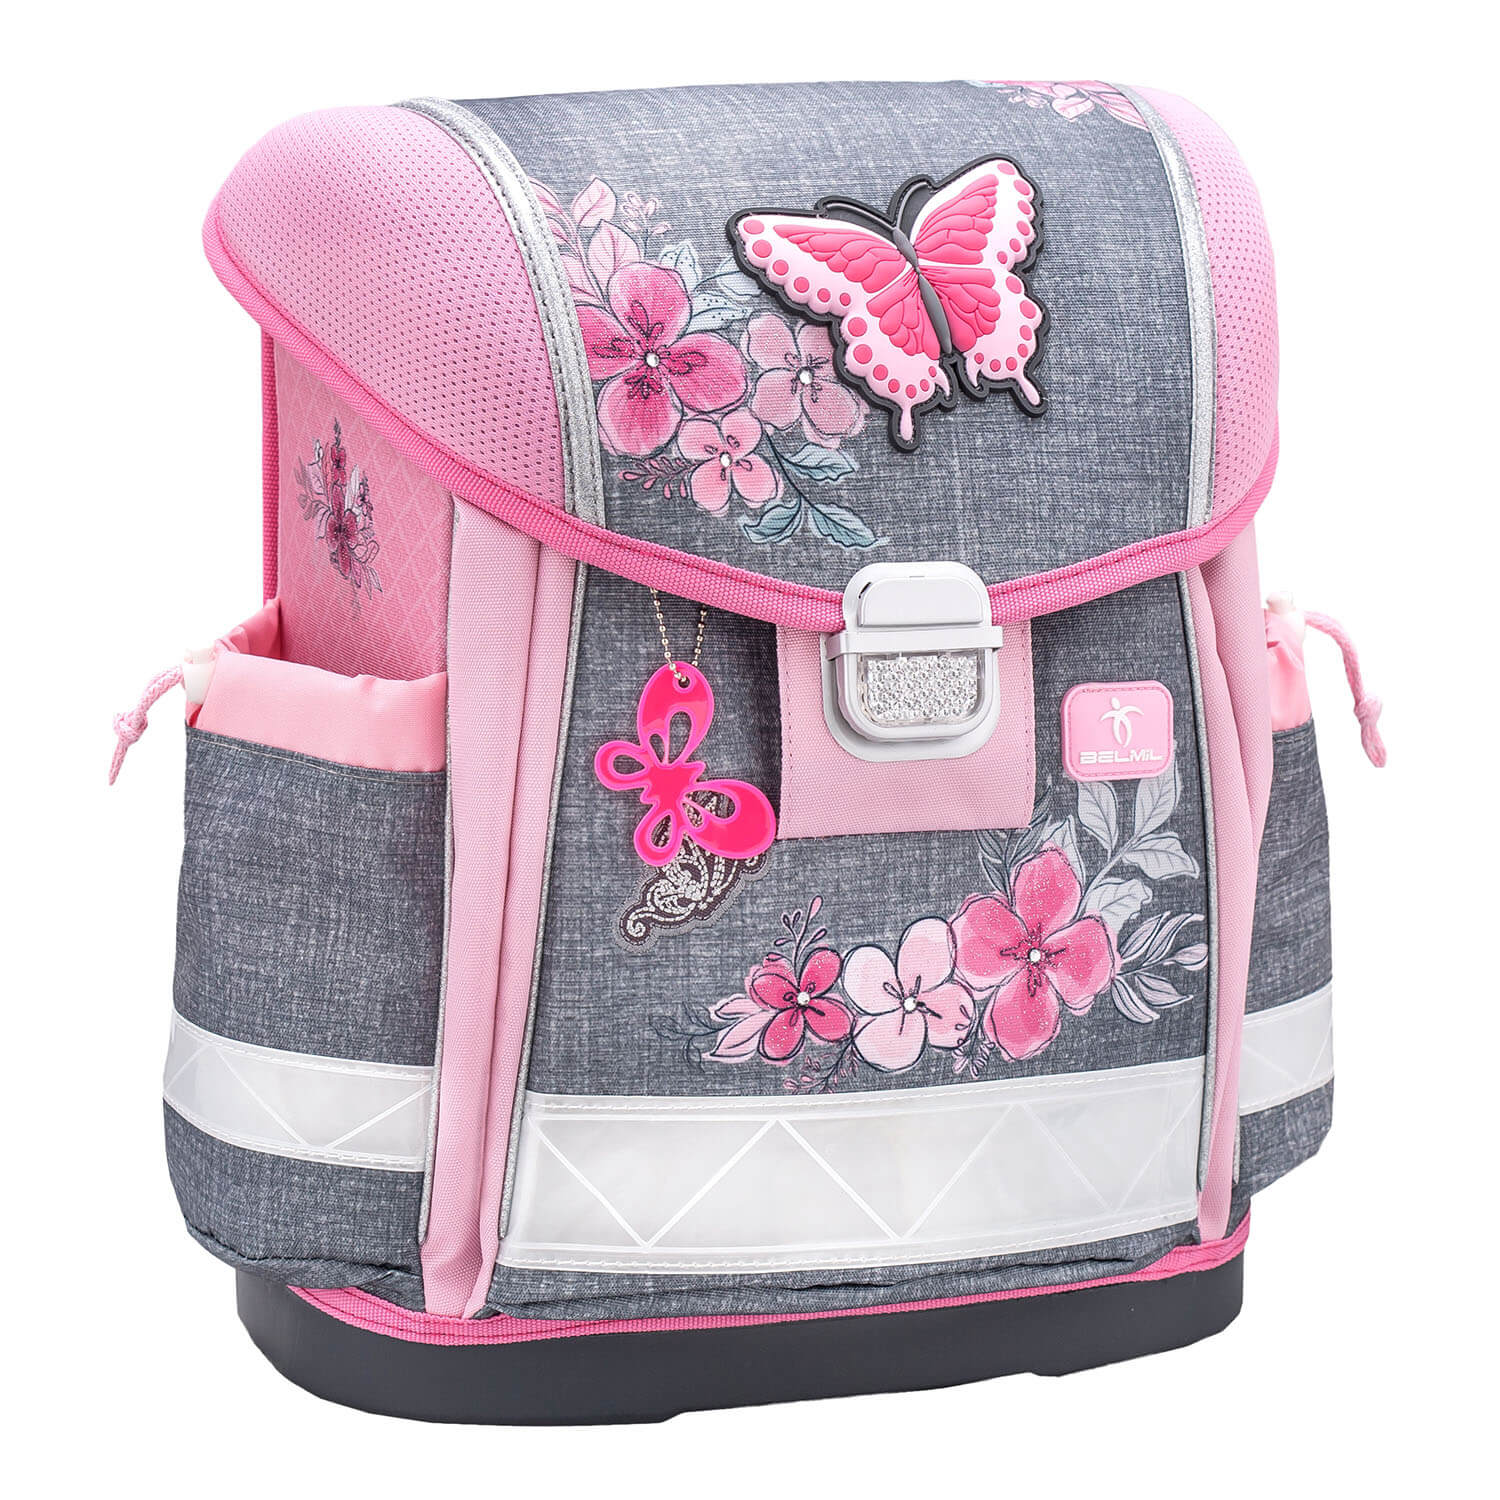 Classy Elegant schoolbag set 4 pcs